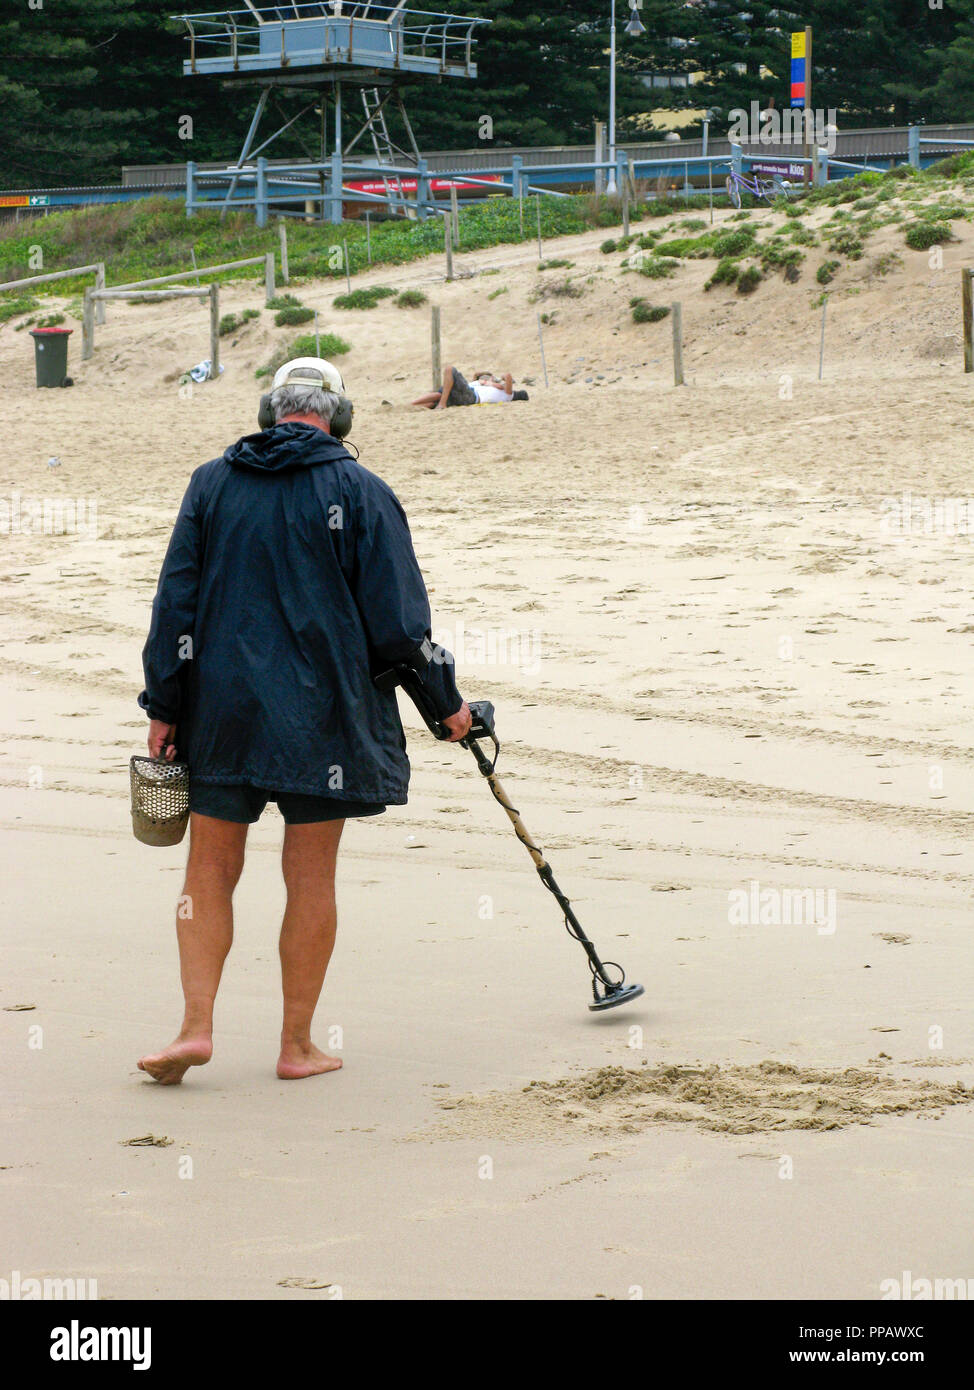 Mann mit Metalldetektor t einen Strand außerhalb von Sydney Australien, auf der Suche nach versteckten Gegenständen aus Metall Stockfoto